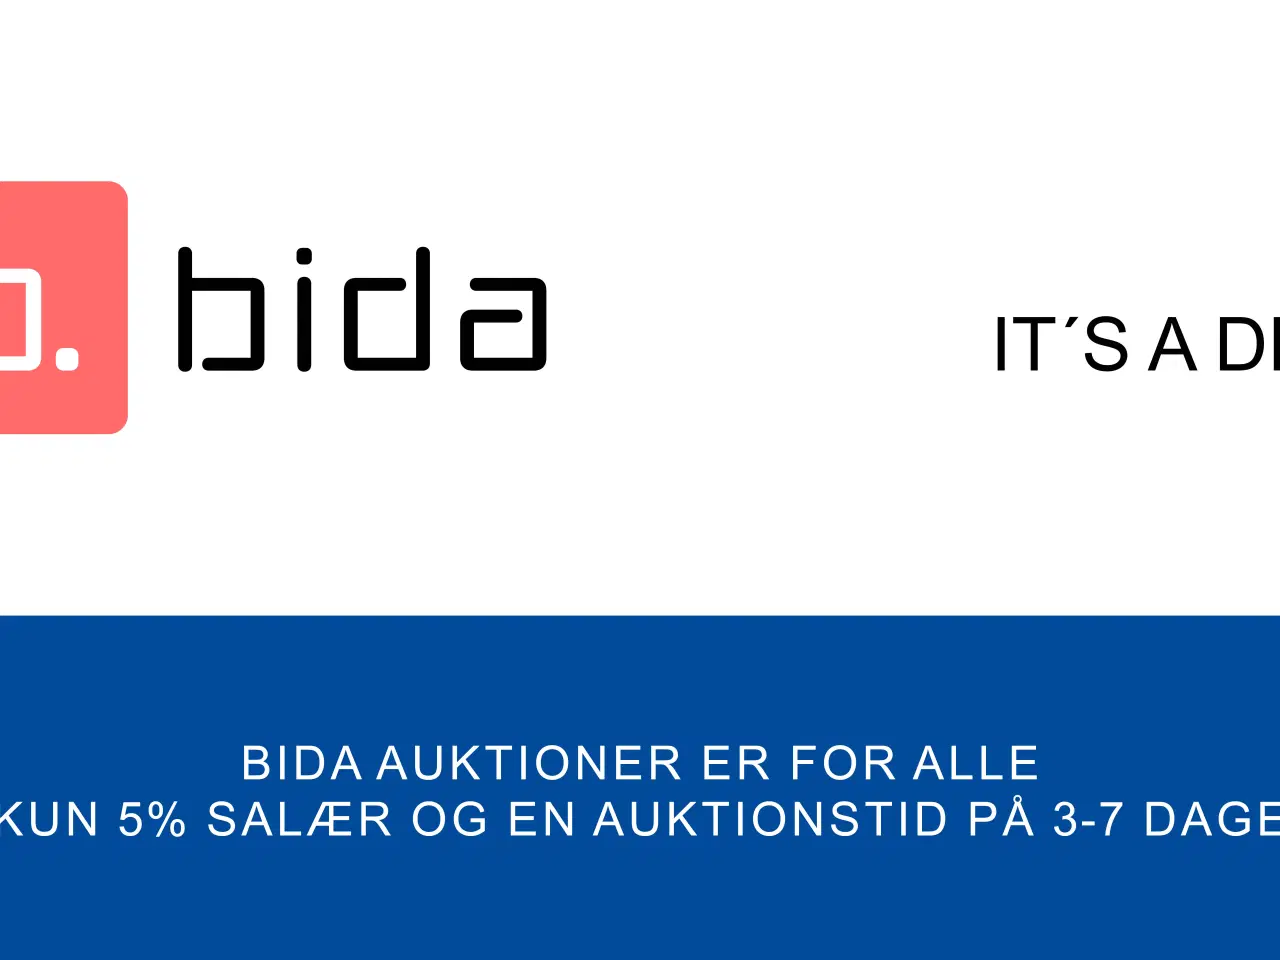 Billede 1 - Bida auktioner til Danmarks billigste priser